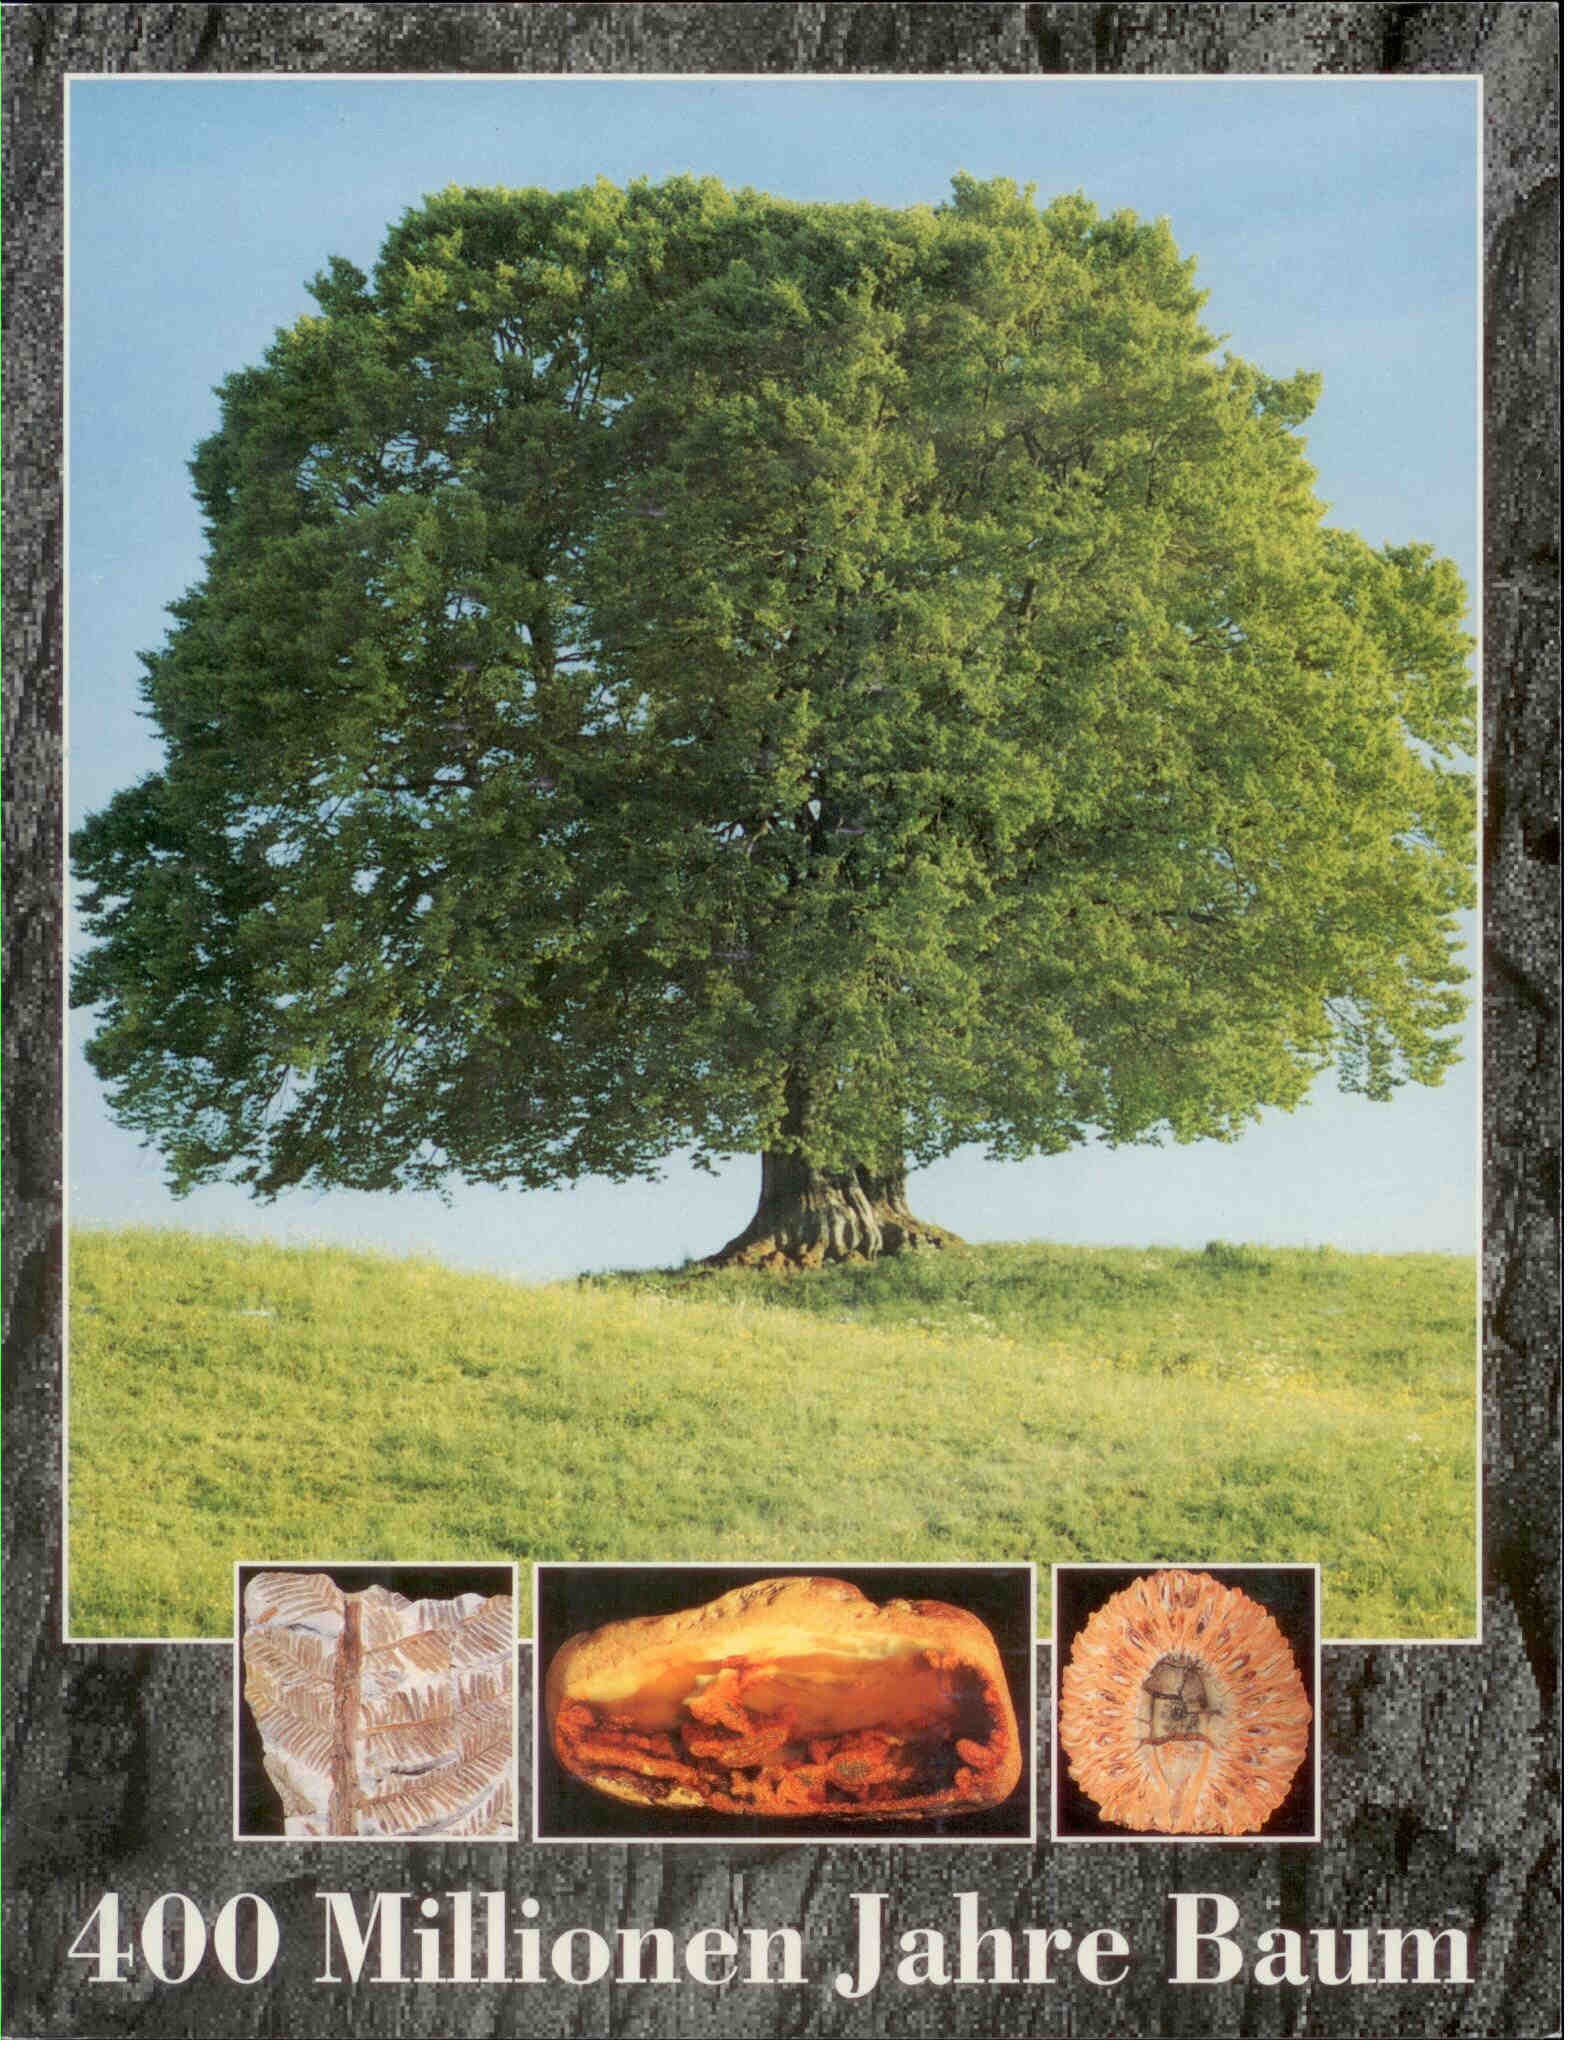 Herm, D.: 400 Millionen Jahre Baum. 